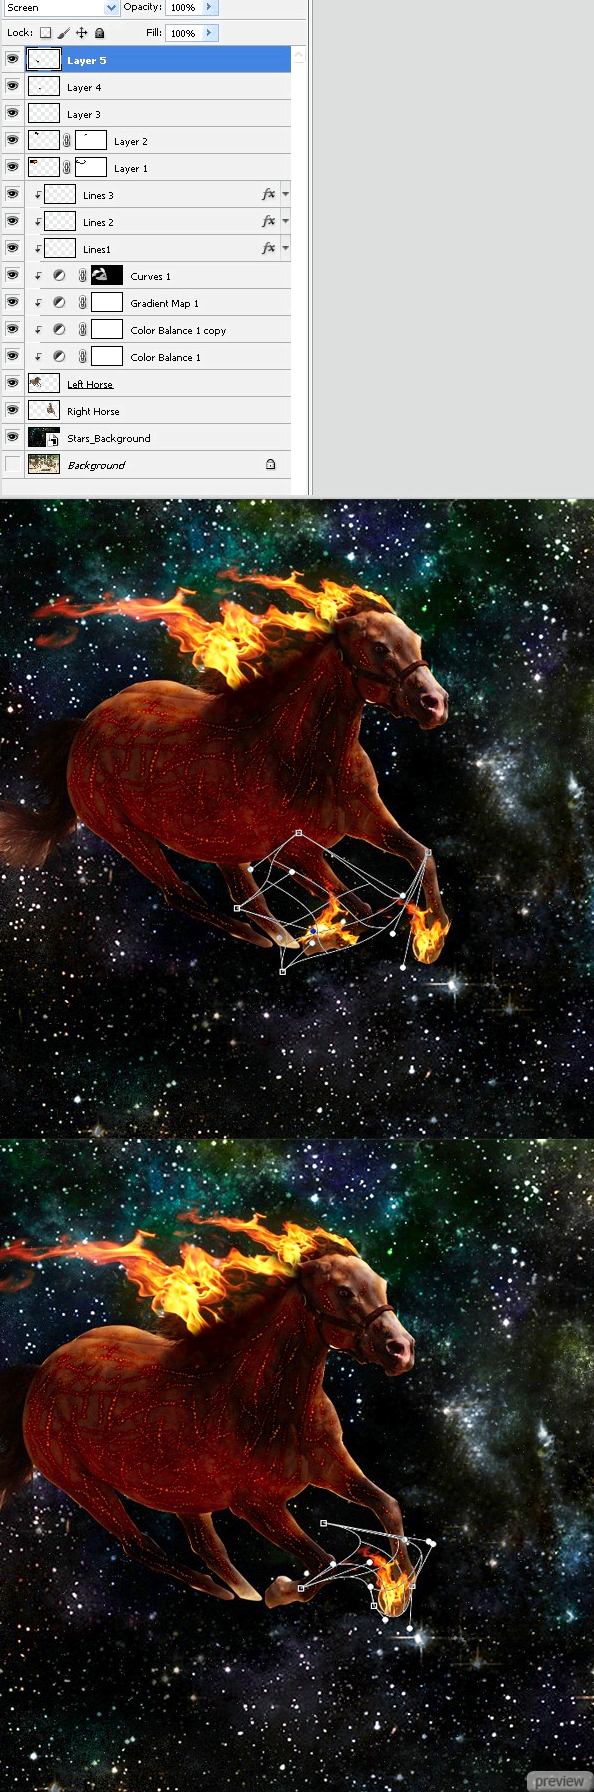 Необычные лошади в космосе. Часть 1